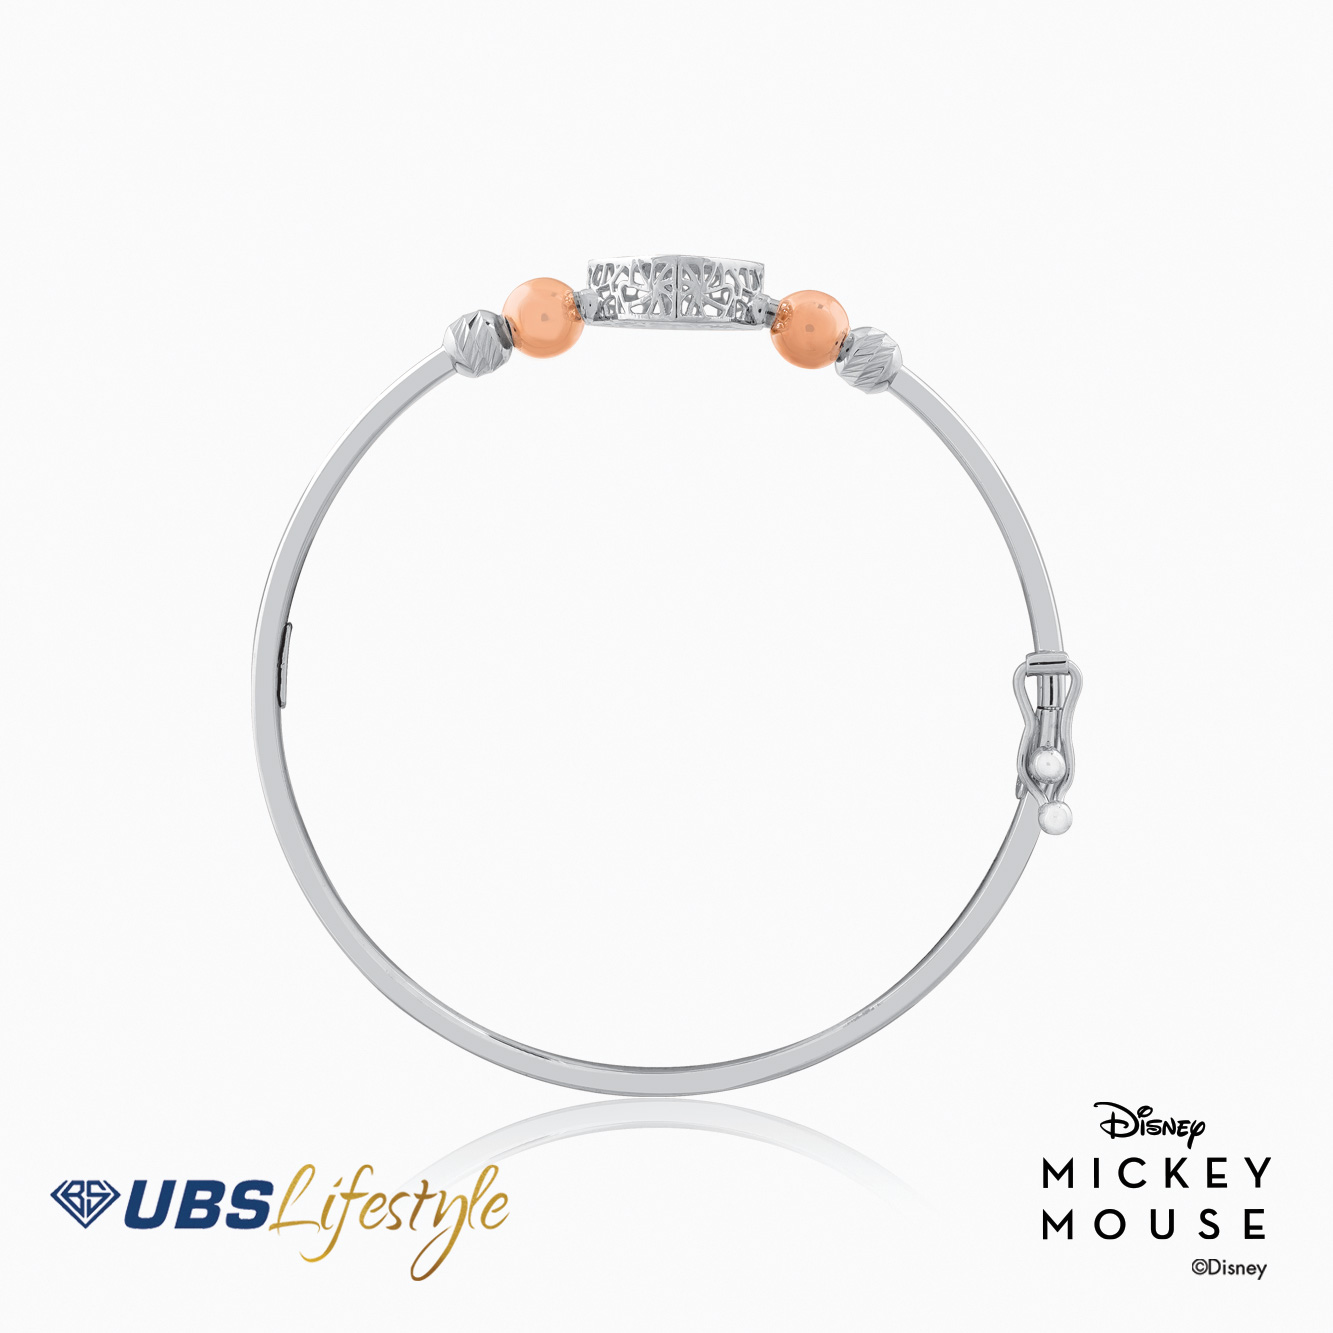 UBS Gelang Emas Bayi Disney Mickey Mouse - Vgy0098- 17K